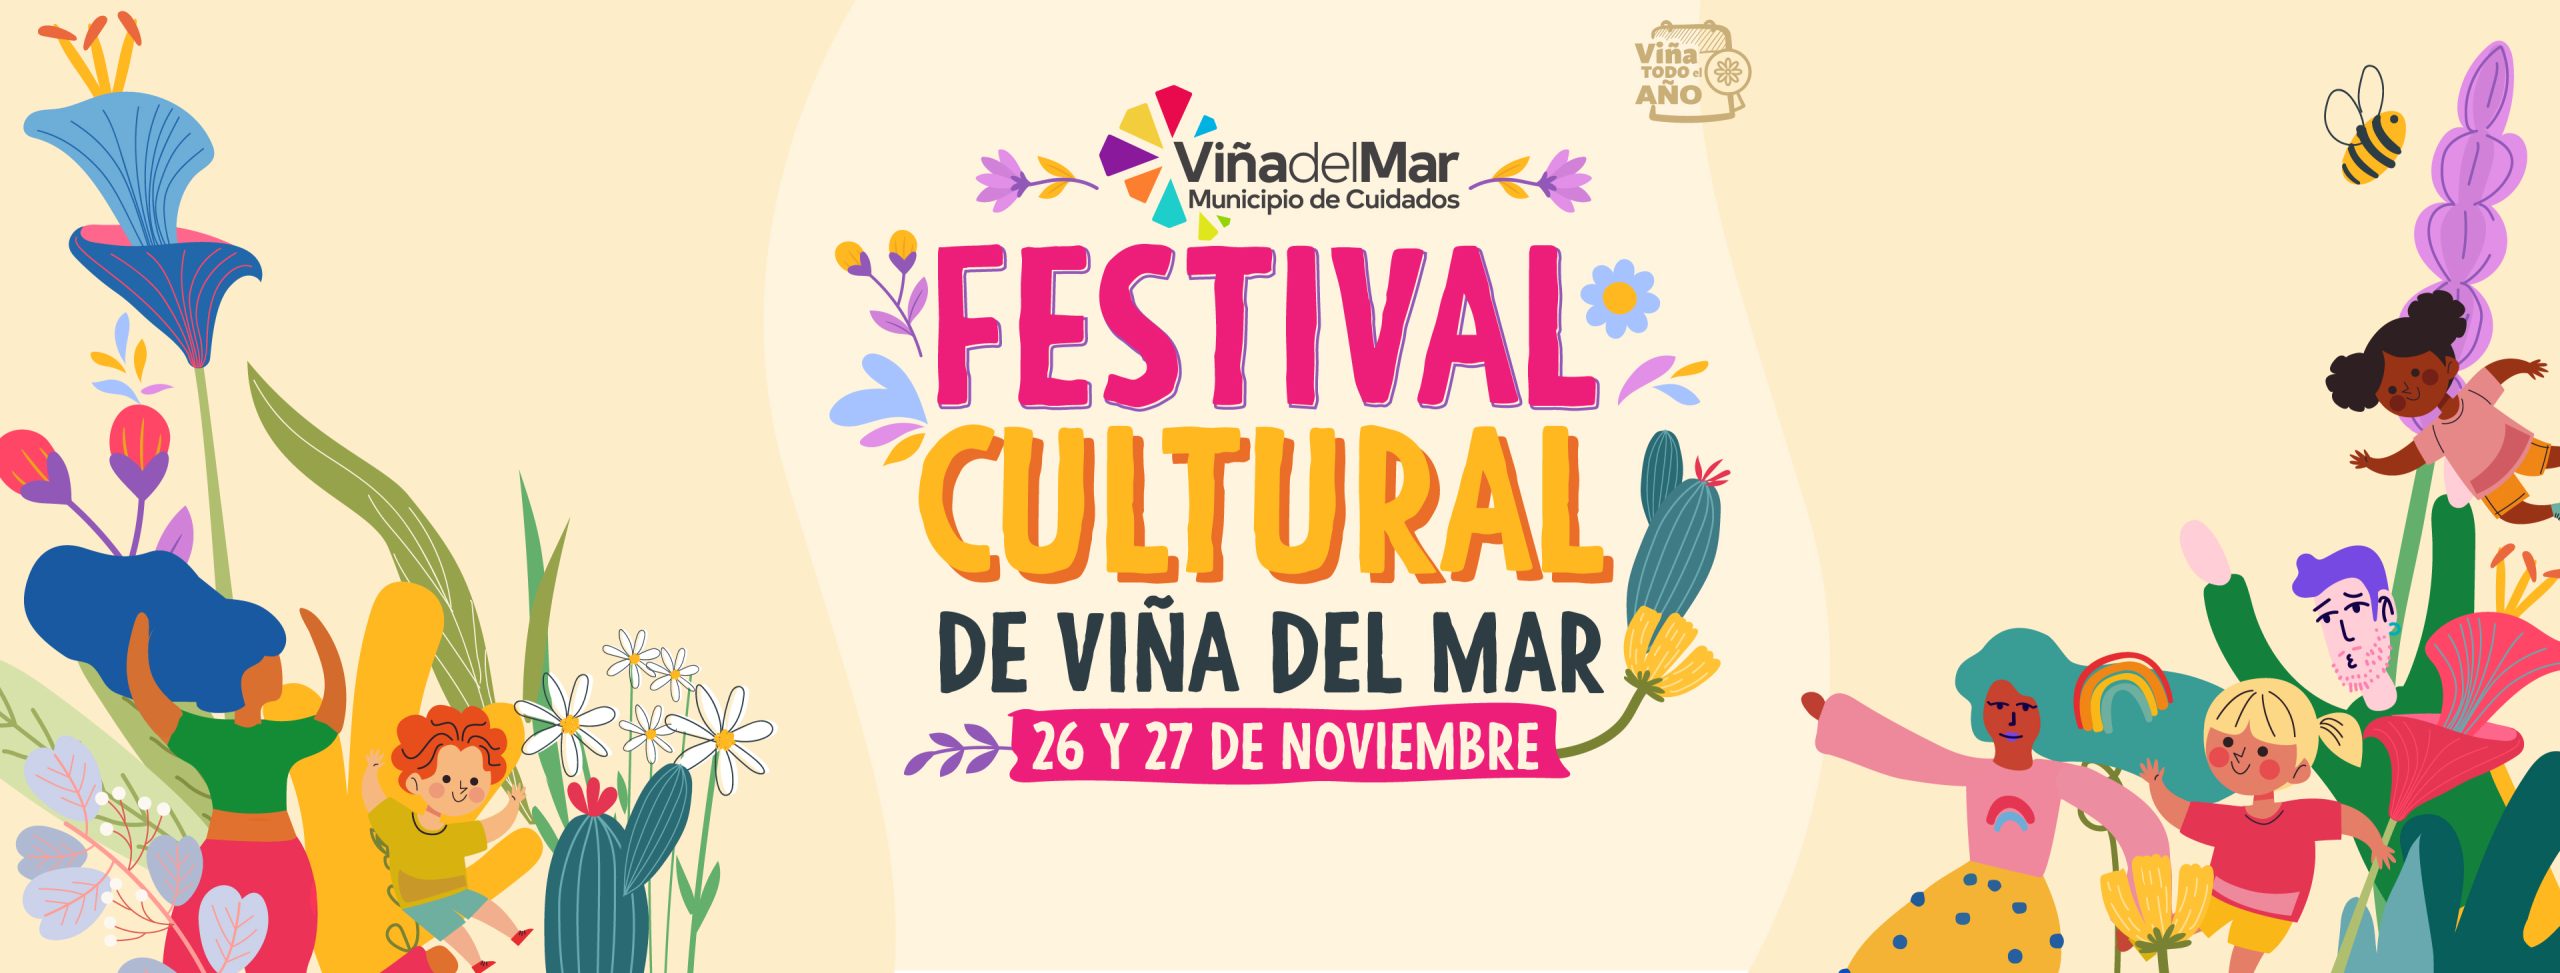 Festival Cultural de Vina del Mar 1 scaled